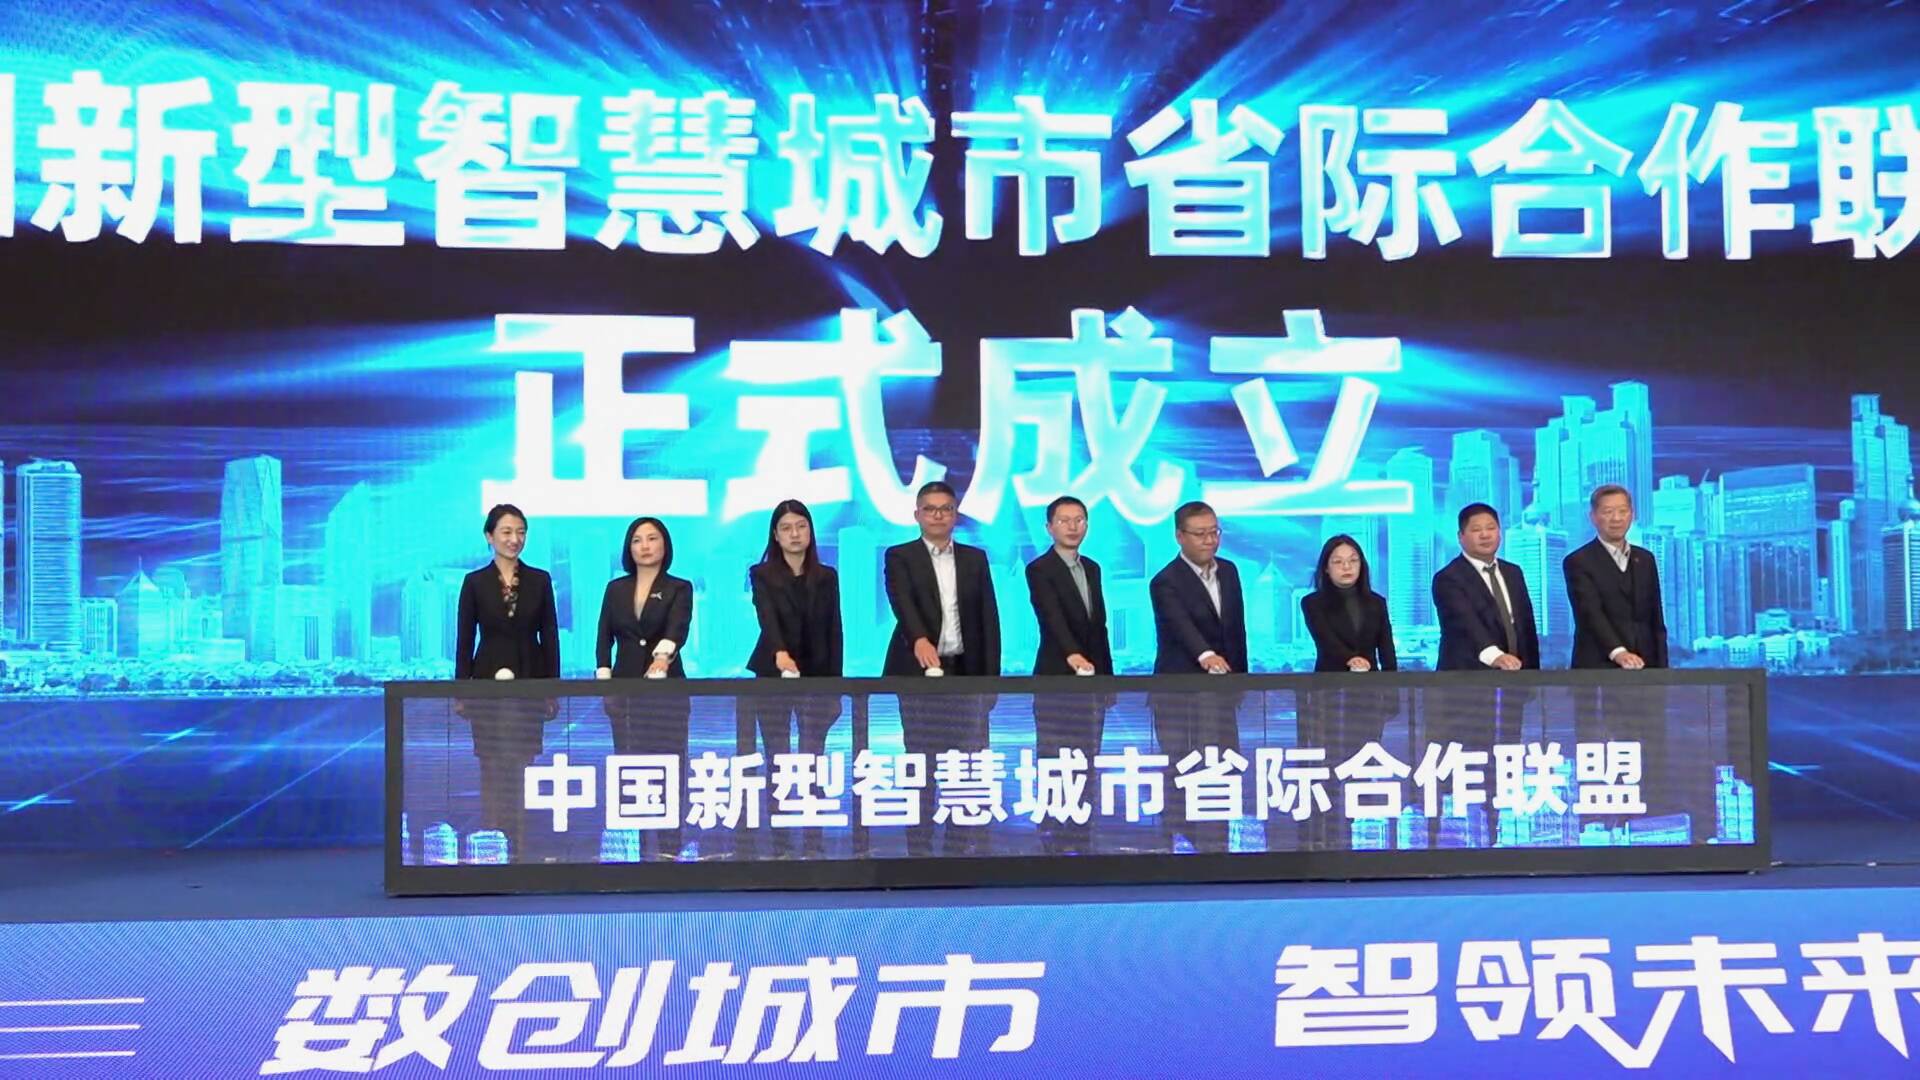 中国新型智慧城市省际合作联盟在青岛正式成立